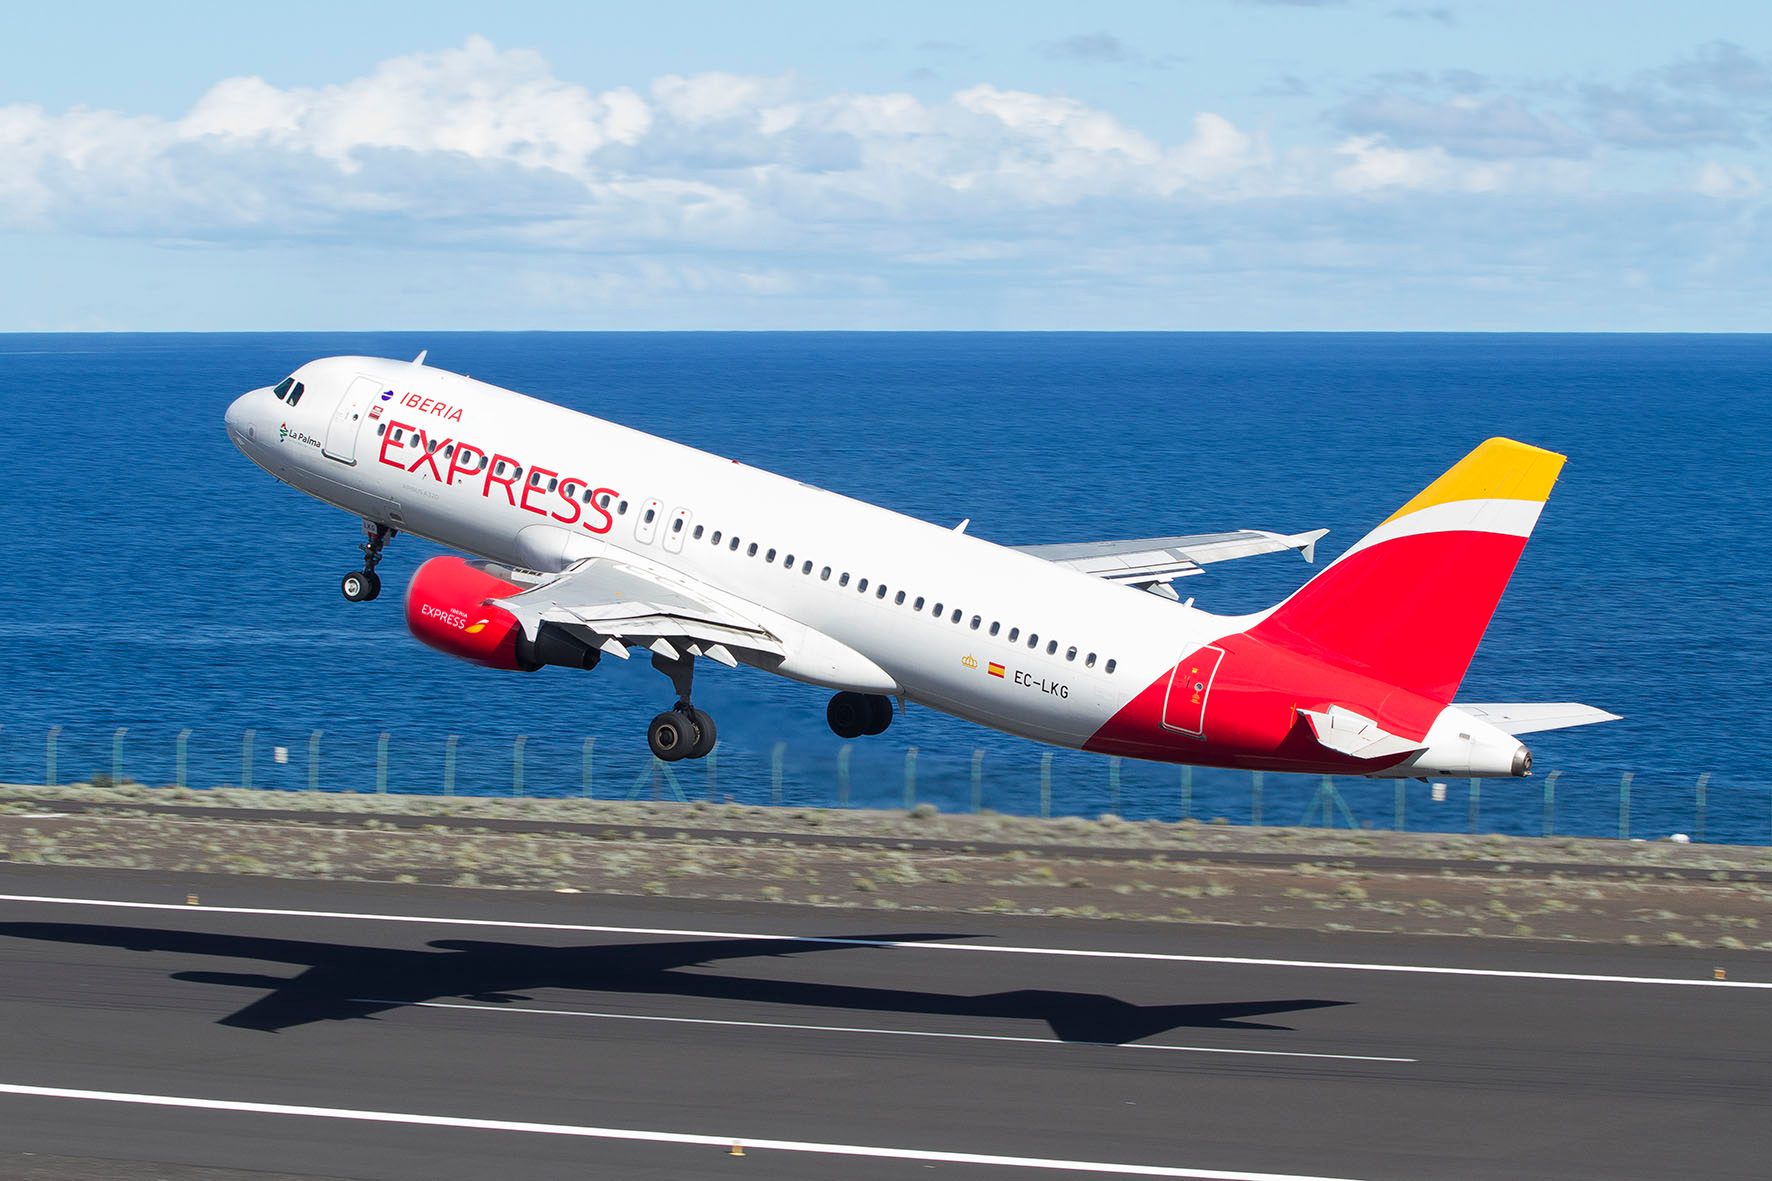 An Iberia Express aircraft departing